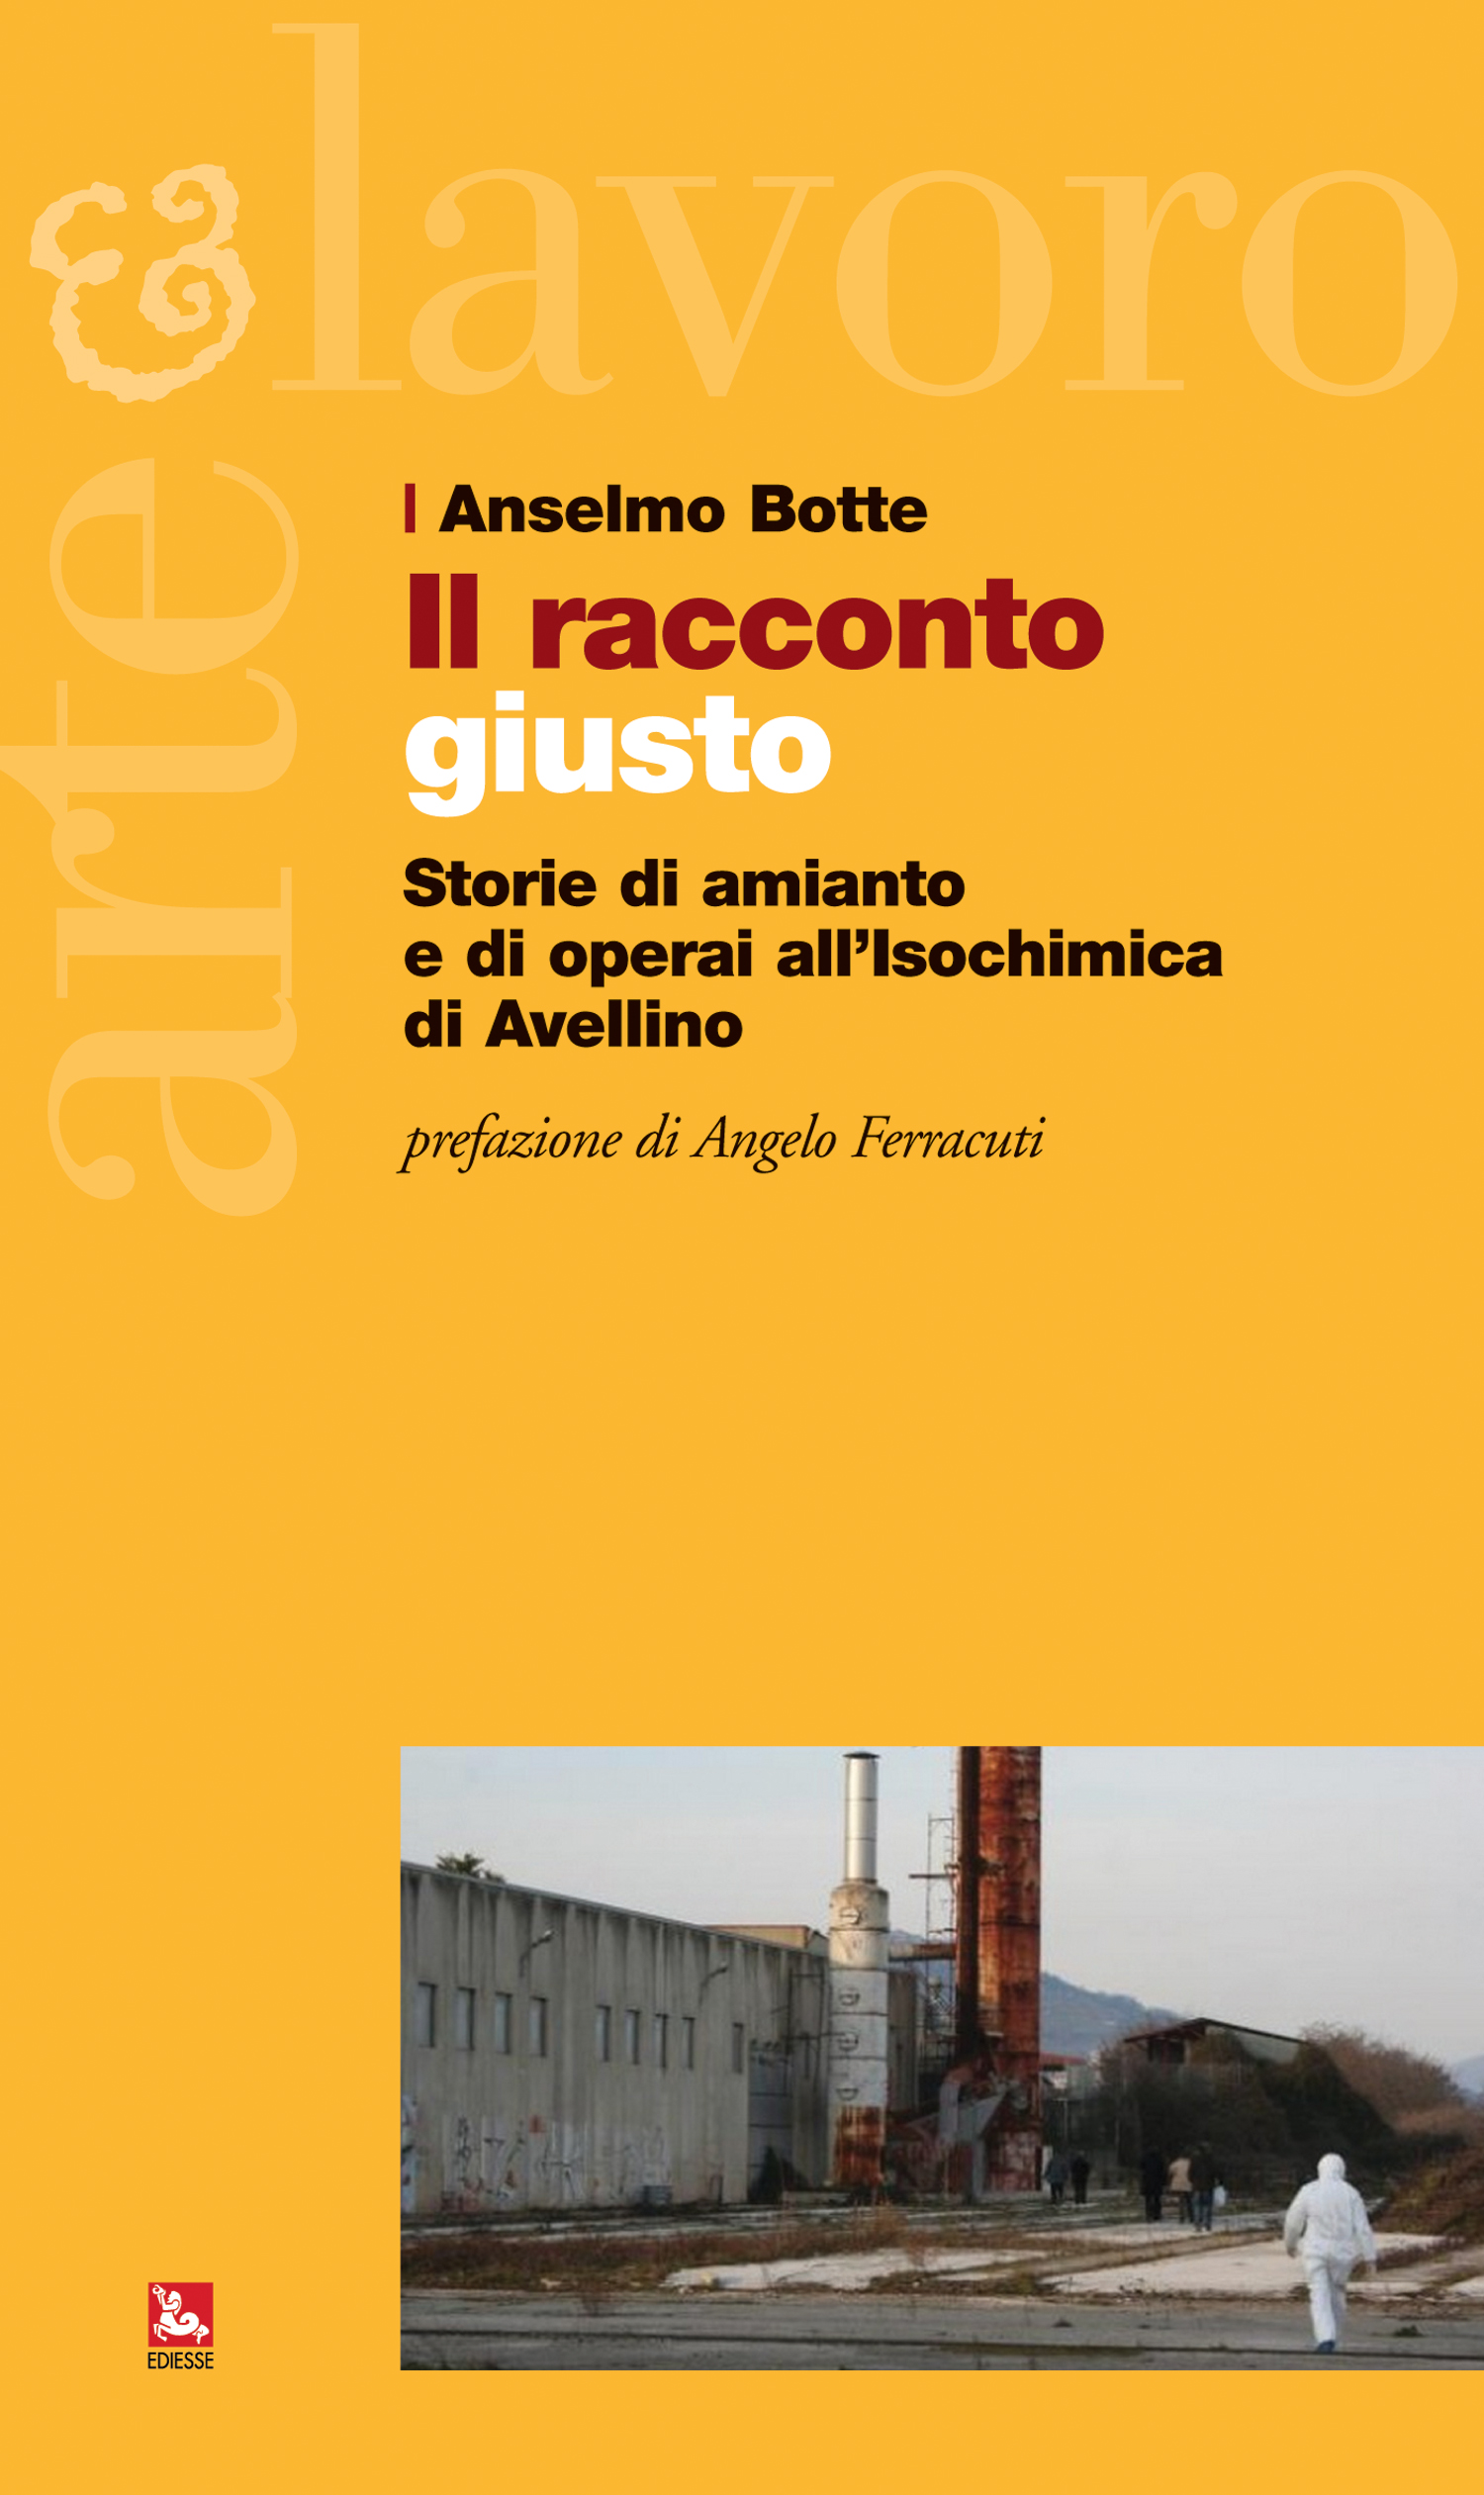 Storie di amianto e operai all’Isochimica di Avellino nel libro di Anselmo Botte: l’appuntamento a Gioi